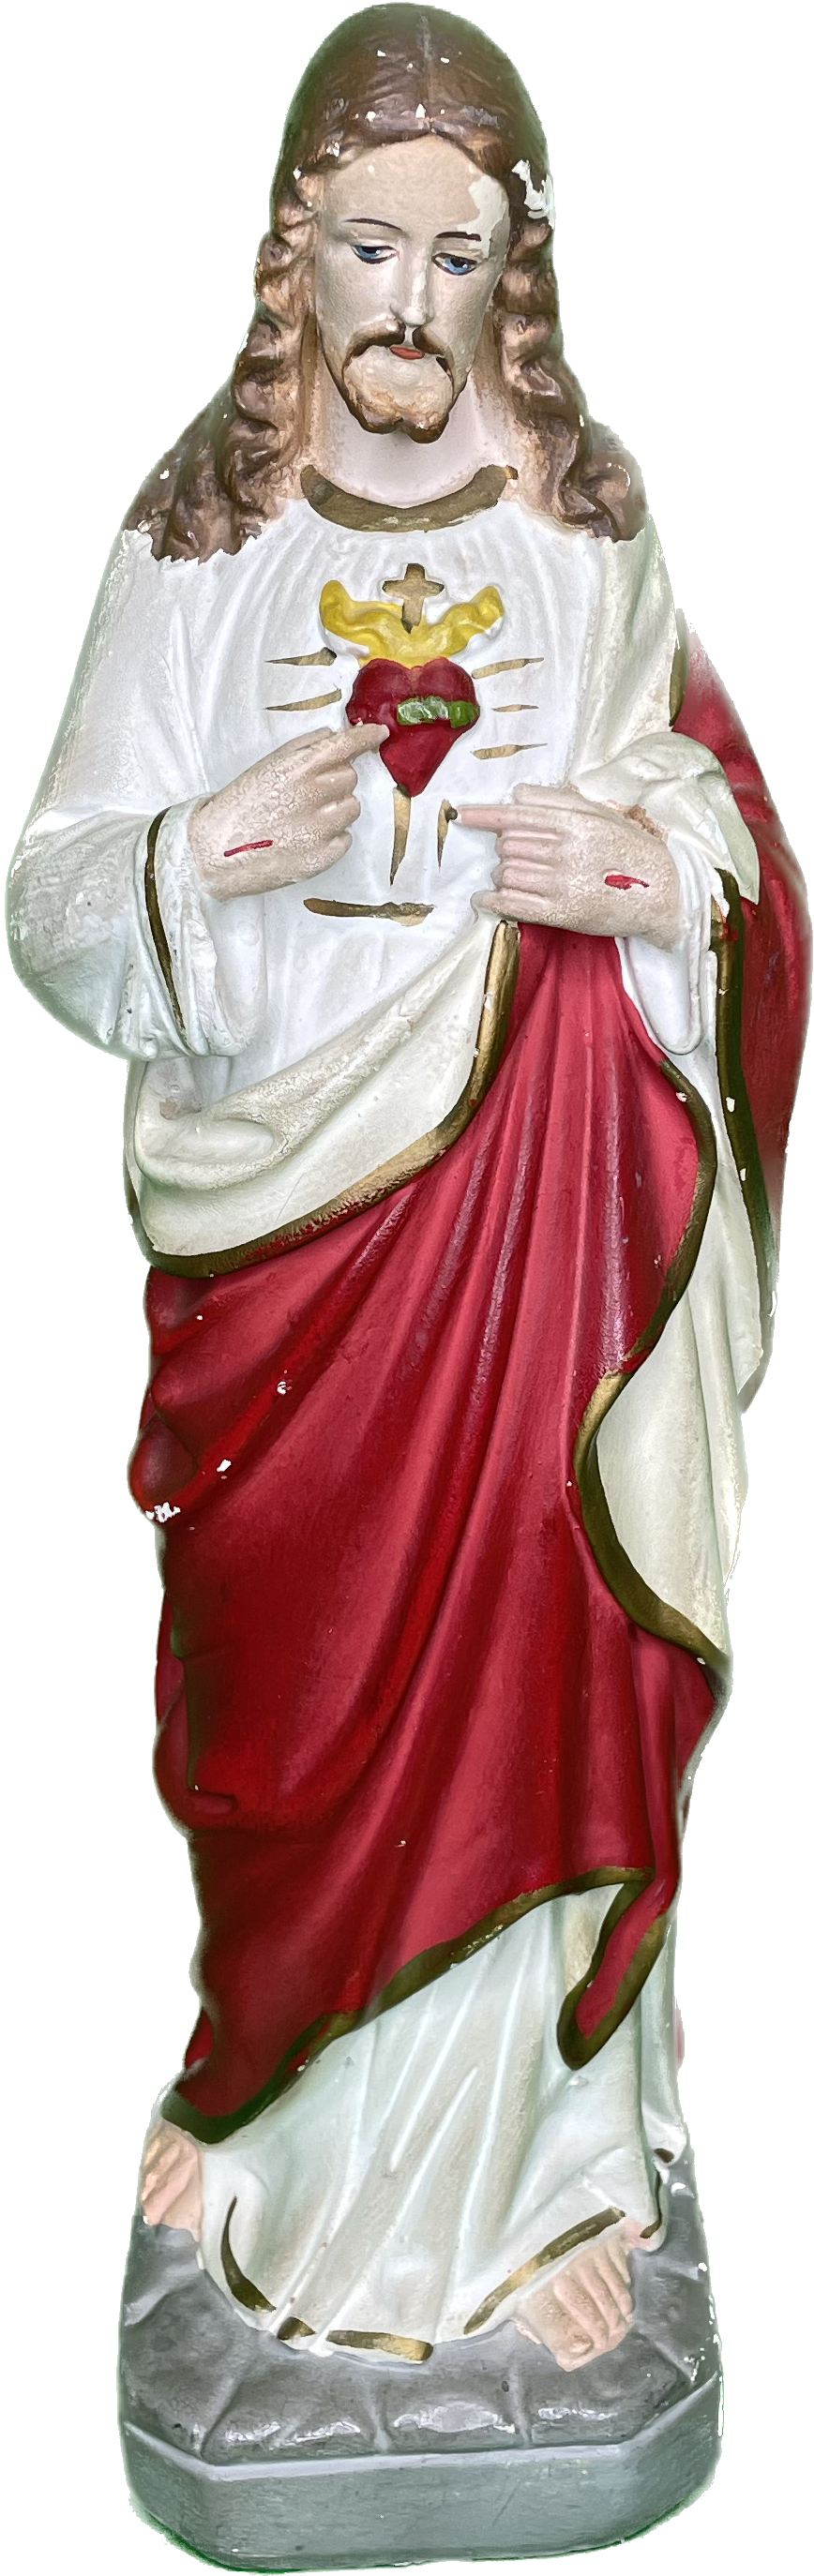 Vintage 13” Jesus Chalkware Religious Statue 50s